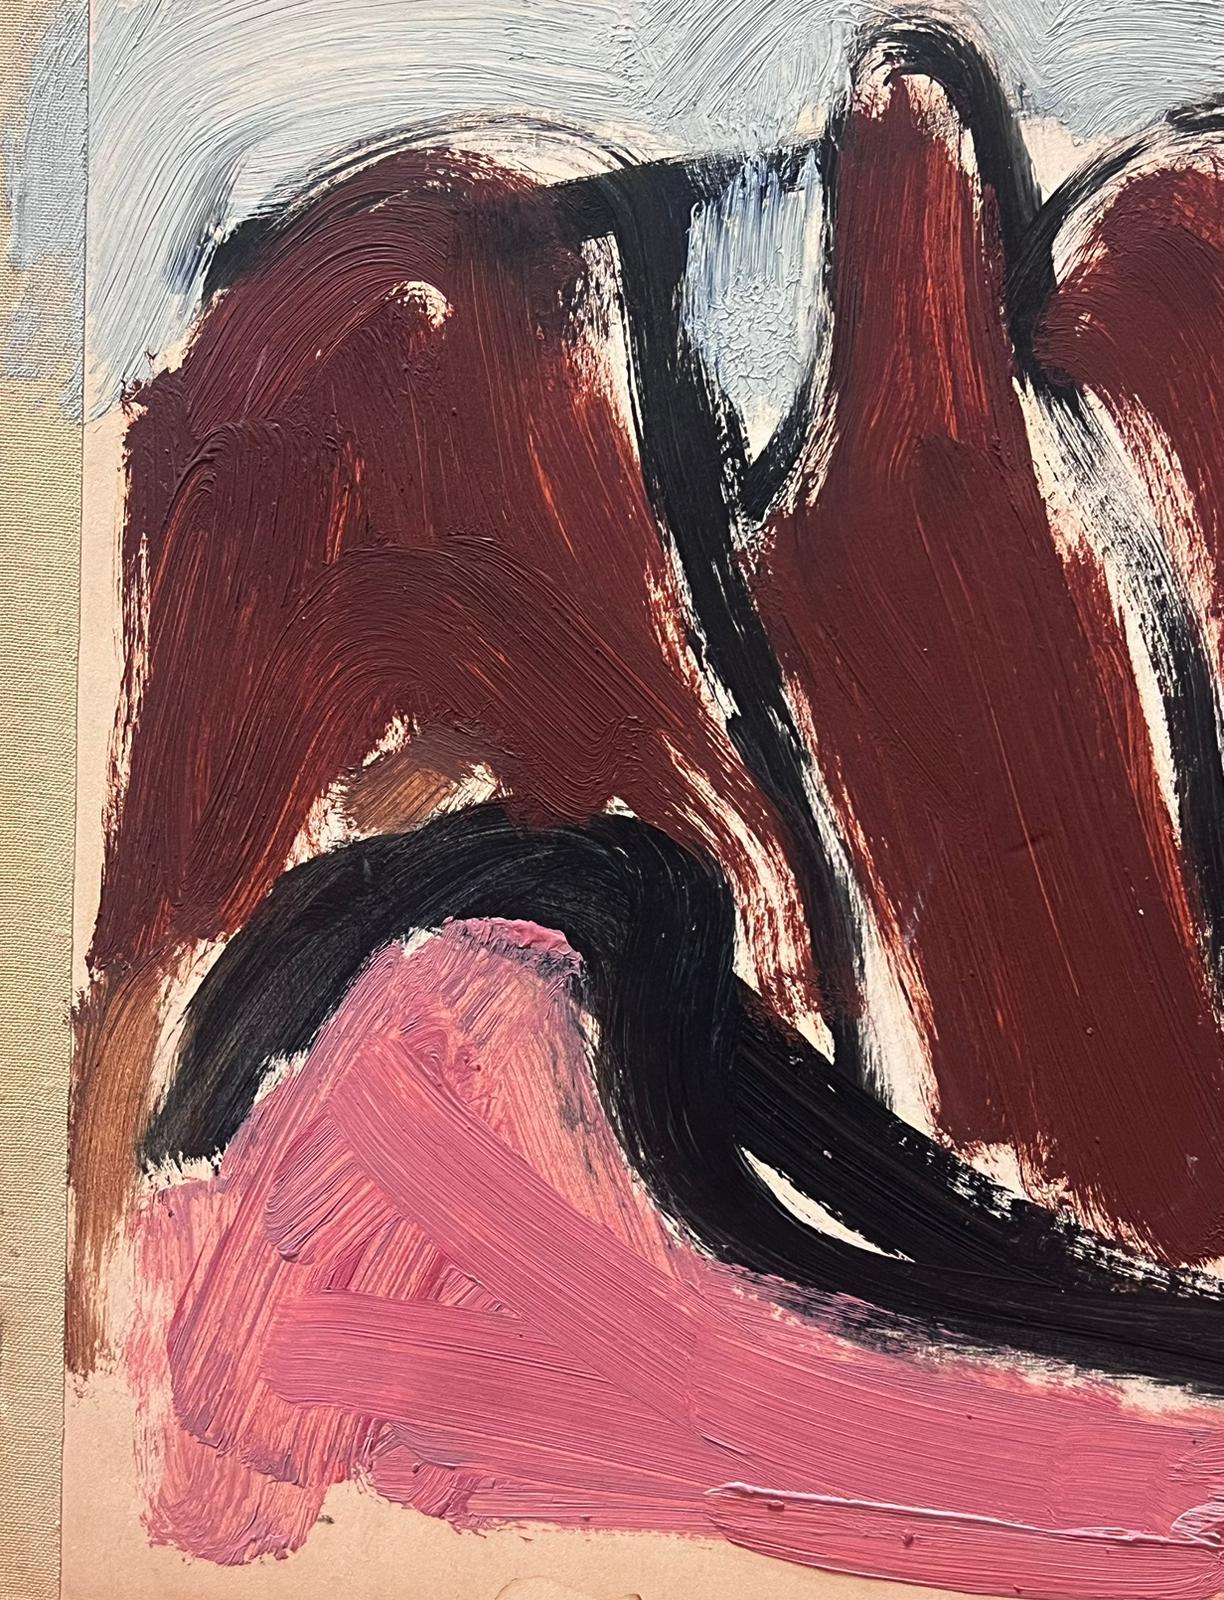 Peinture à l'huile moderniste allemande du 20e siècle, collines brunes et roses - Moderne Painting par Elisabeth Hahn